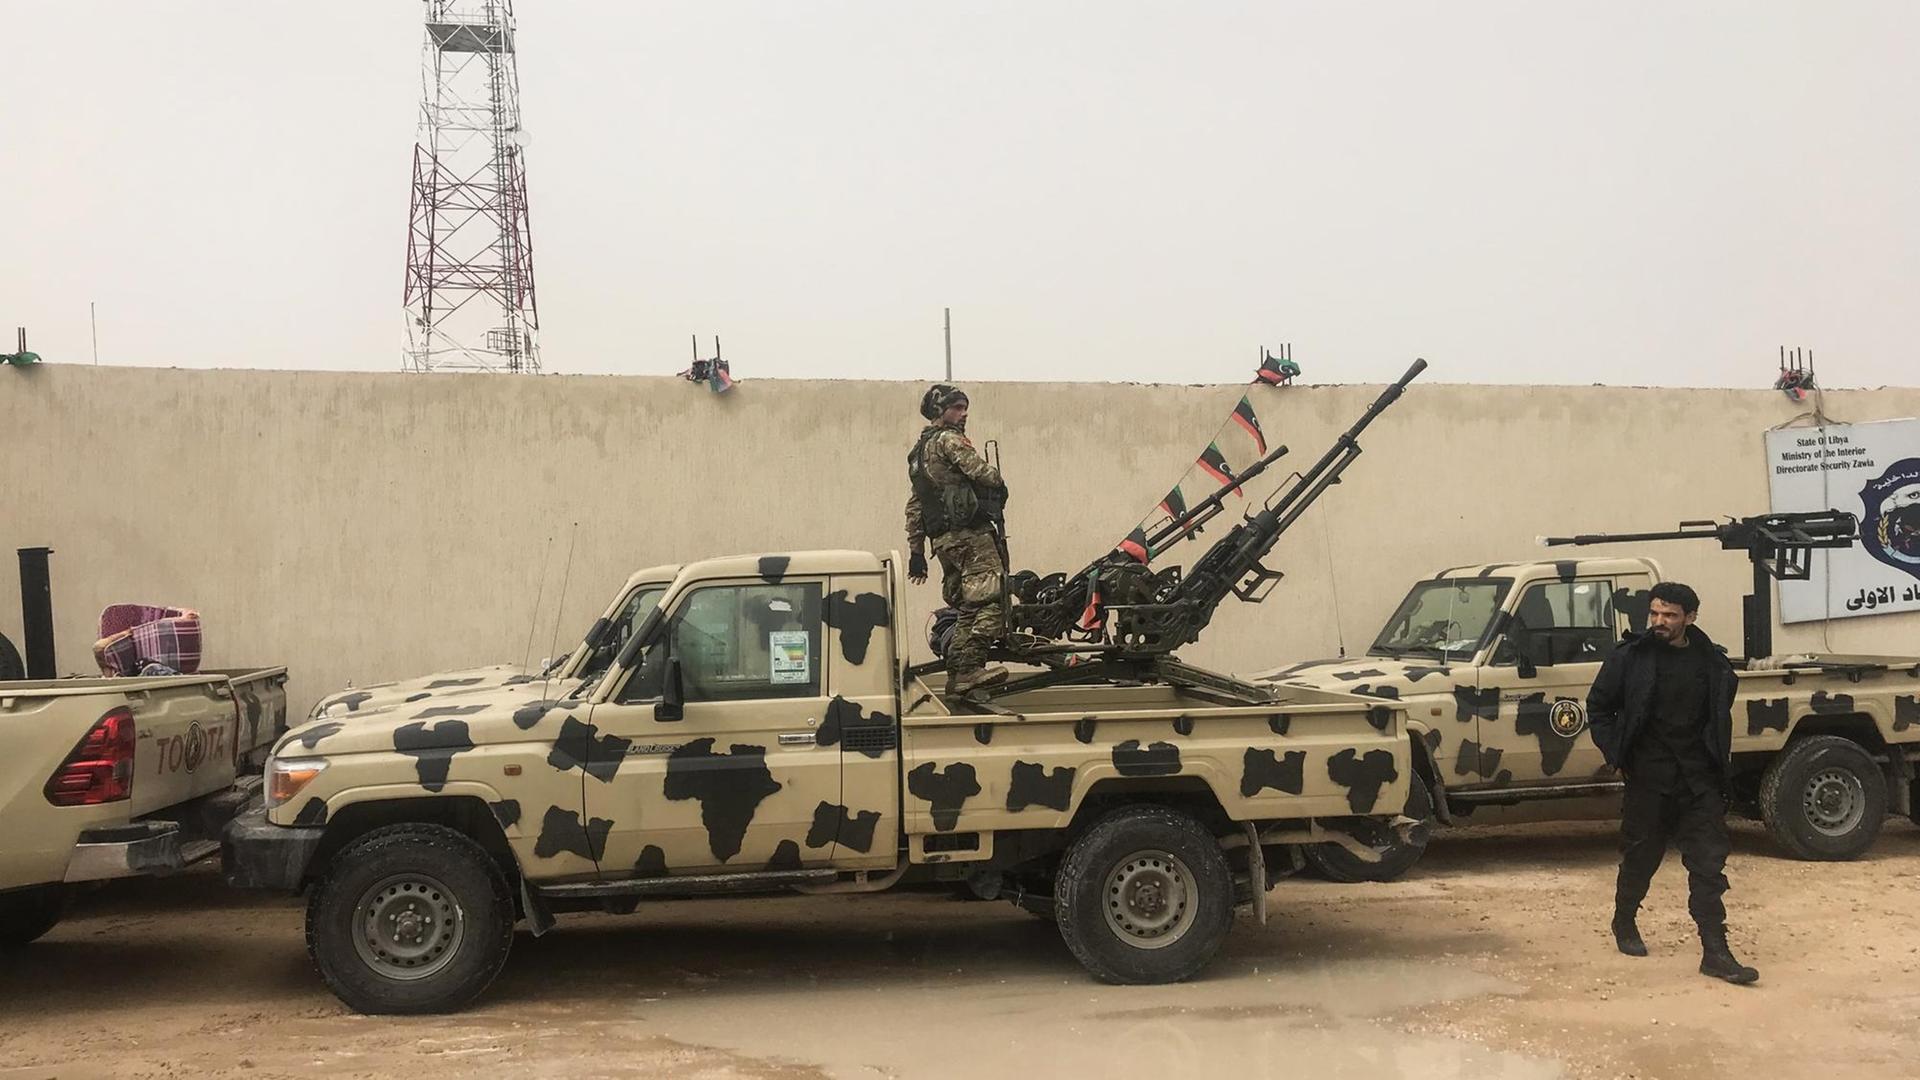 Das Bild zeigt einen Pickup mit einem Maschinengewehr auf der Ladefläche. Er gehört zu einer Miliz, die gegen den abtrünnigen Generalt Haftar in Libyen kämpft.